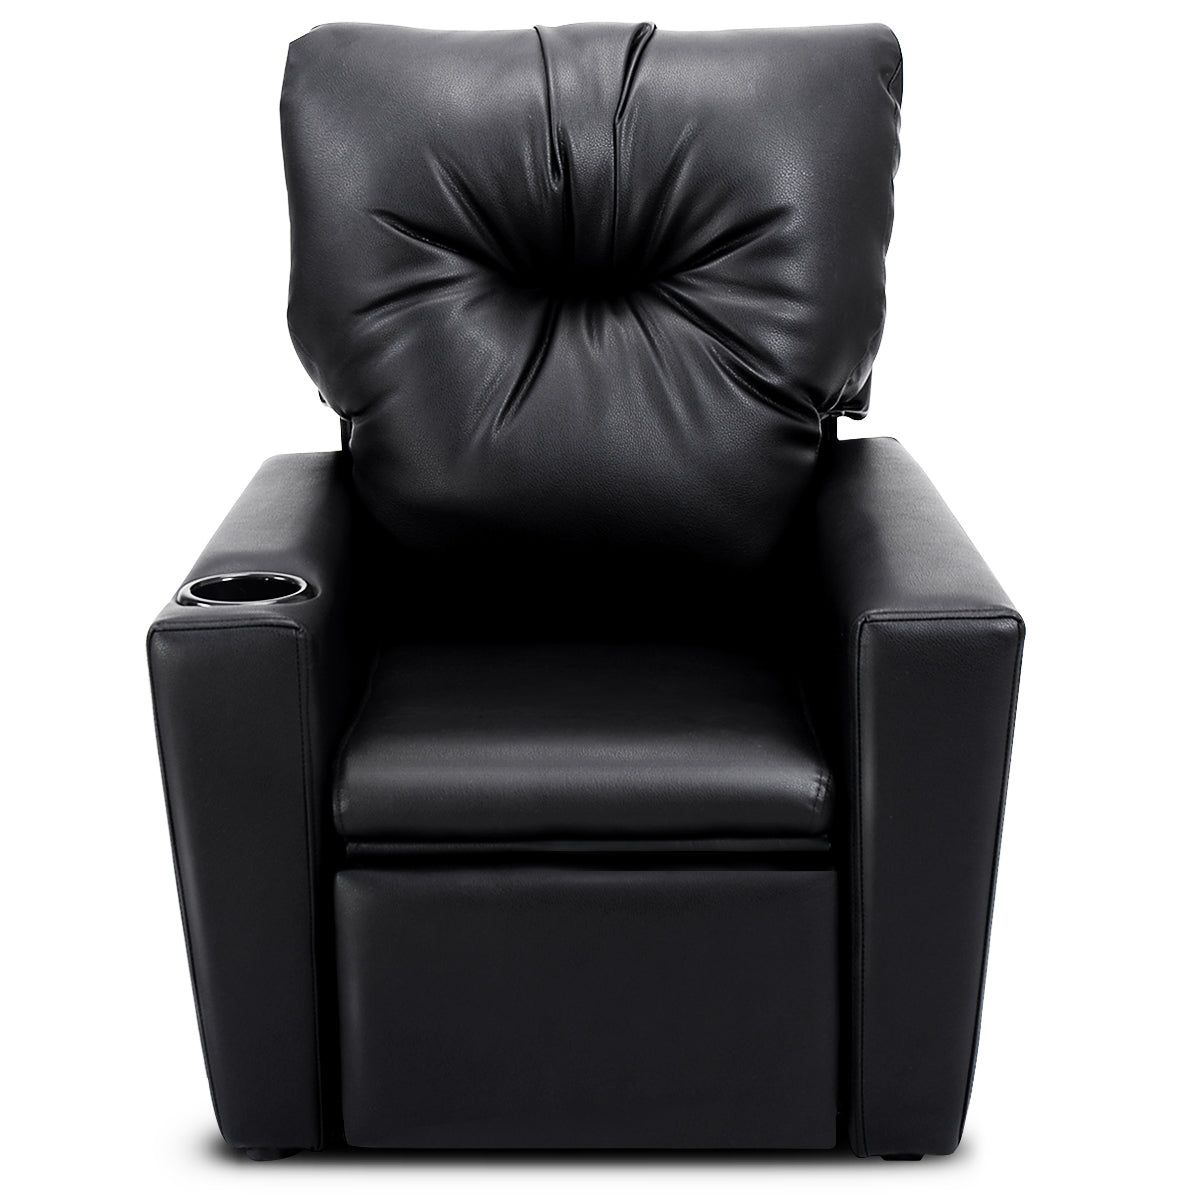 Children's Adjustable Lounge Seat: High Backrest and Armrest - Stylish Black